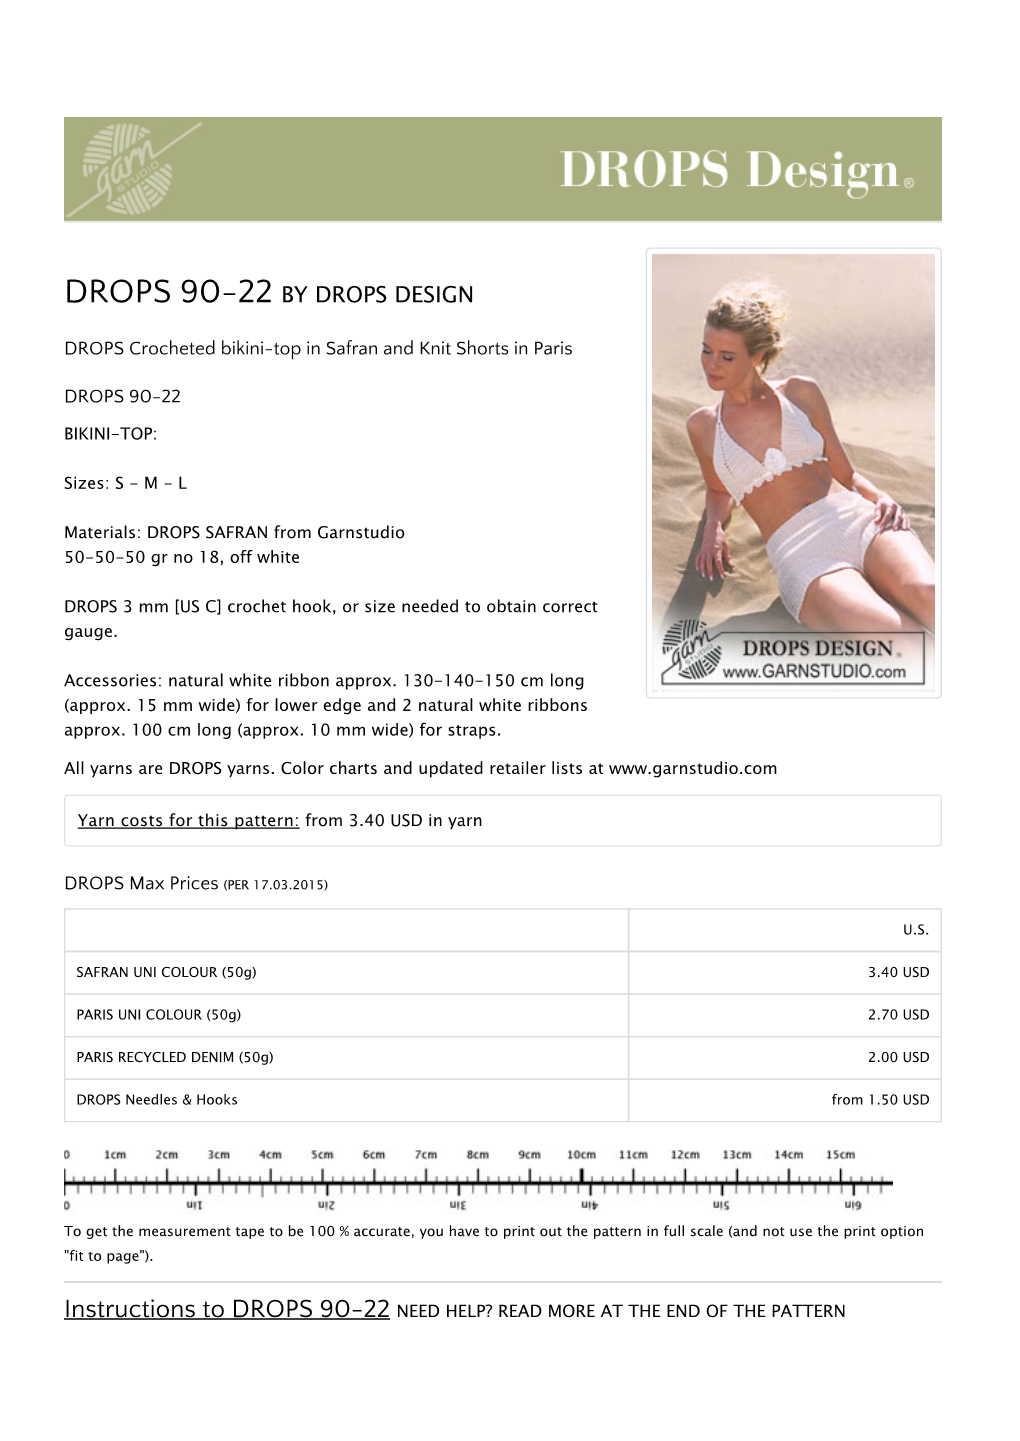 Drops 90-22 by Drops Design